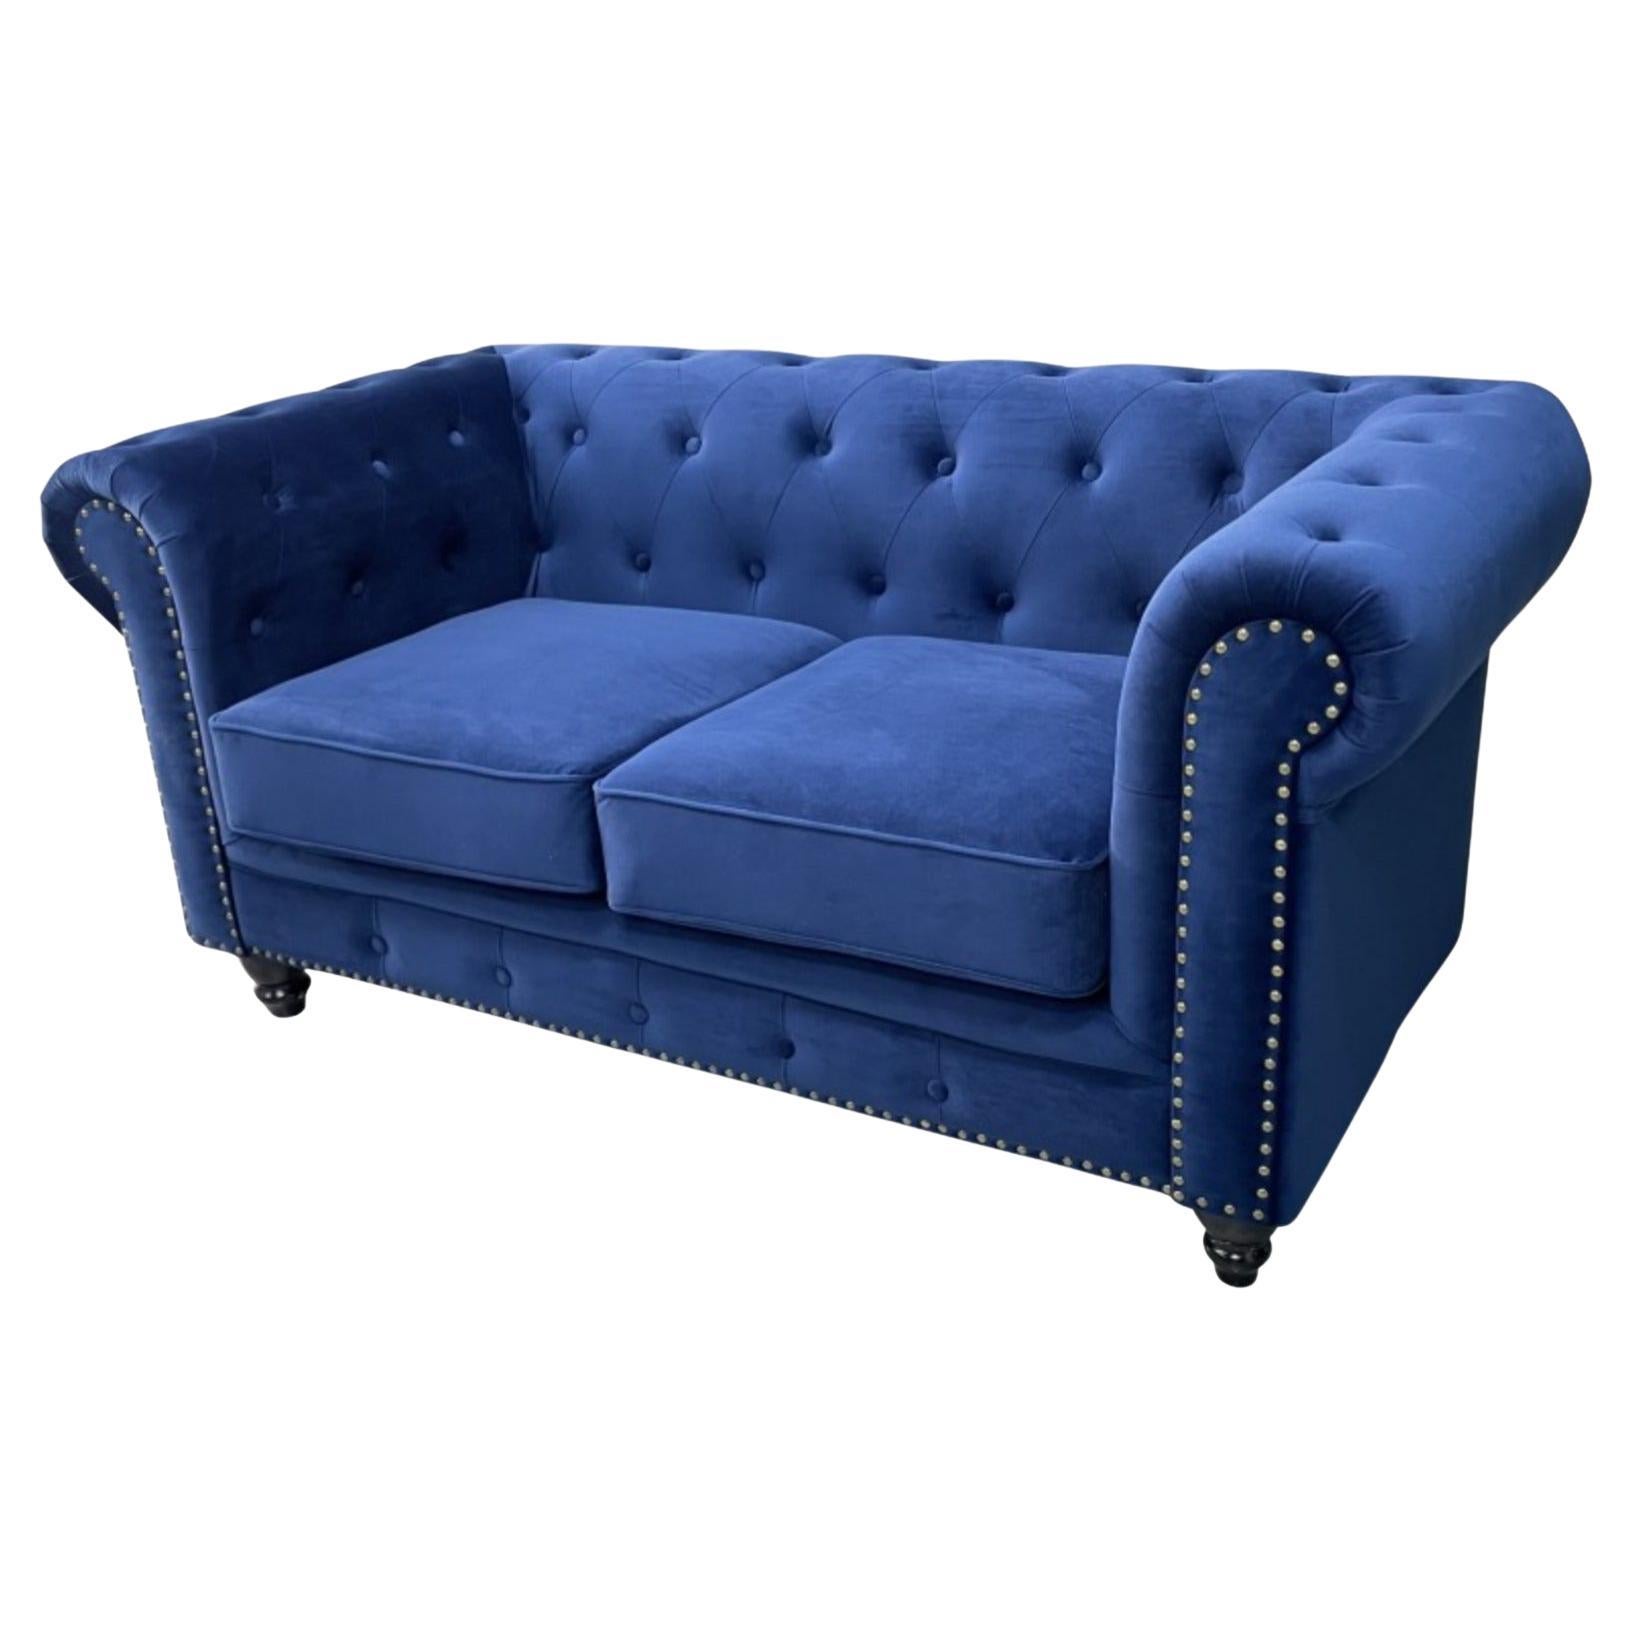 New Chester Premium 2 Seater Sofa, Navy Blue Velvet Upholstery For Sale